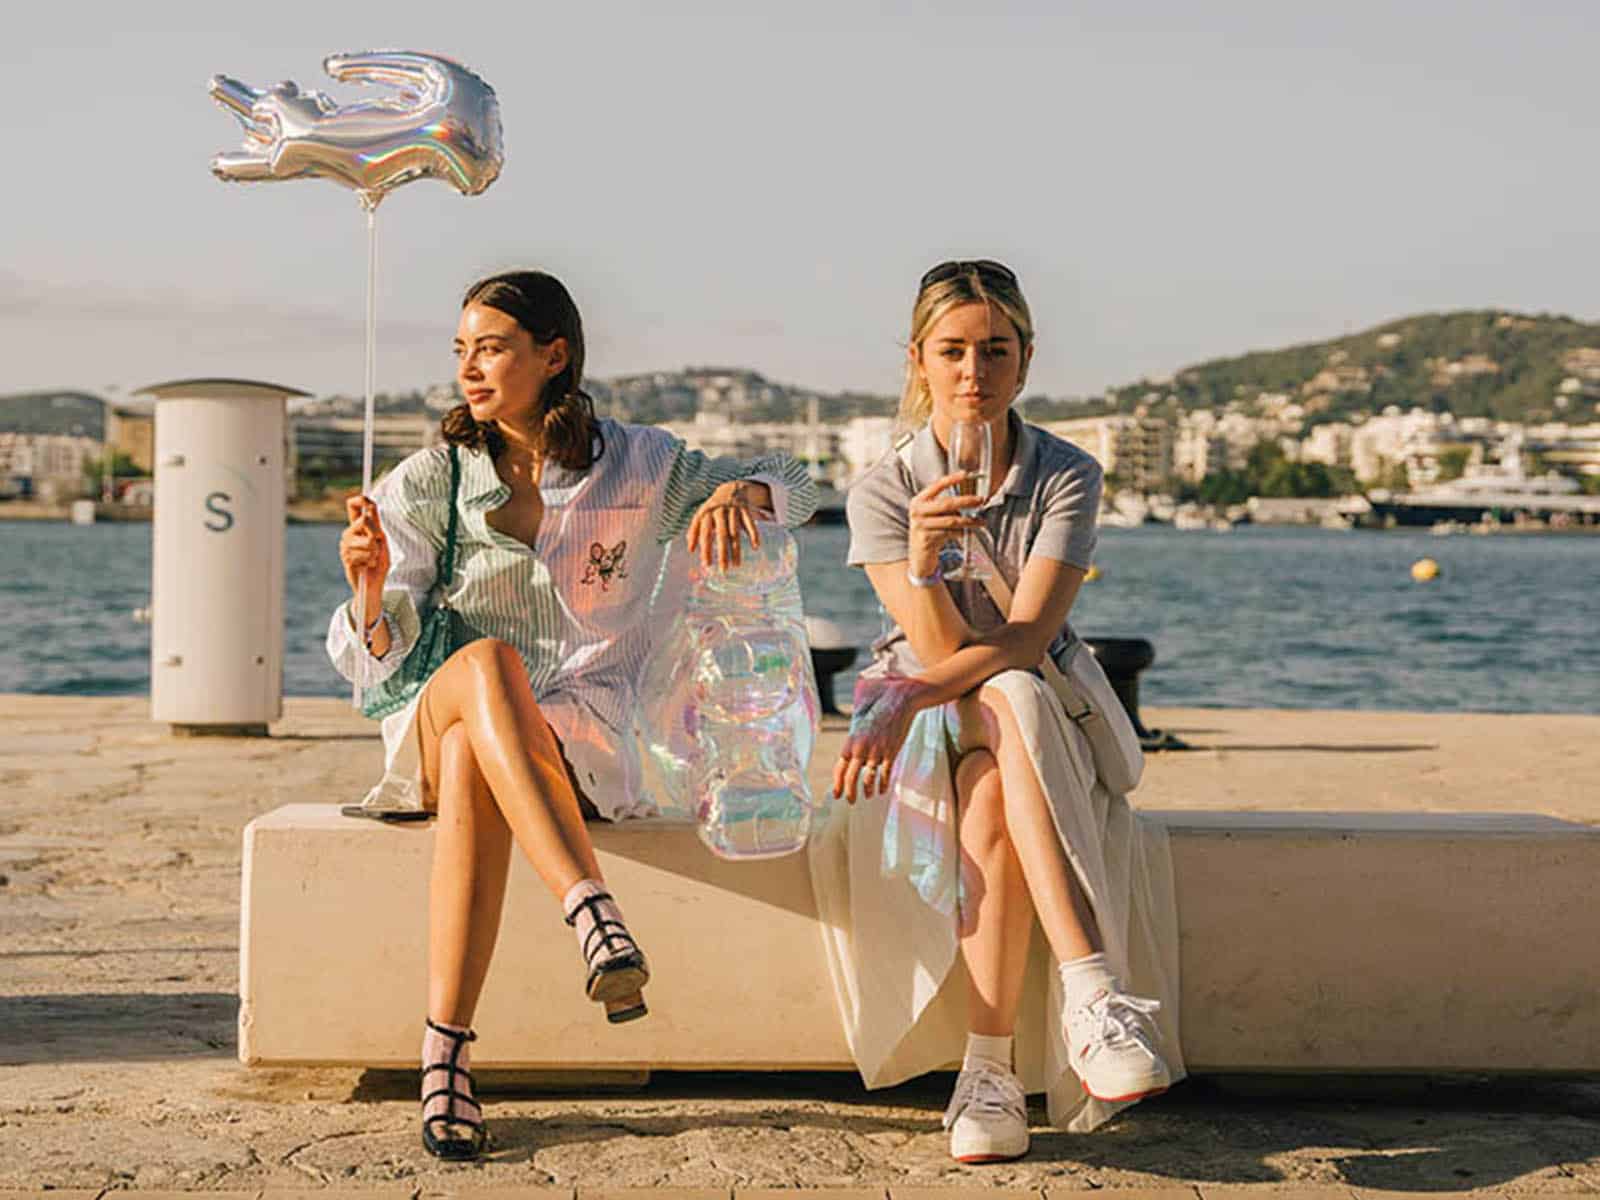 Louis Vuitton aterriza en Ibiza: así es su nueva pop up